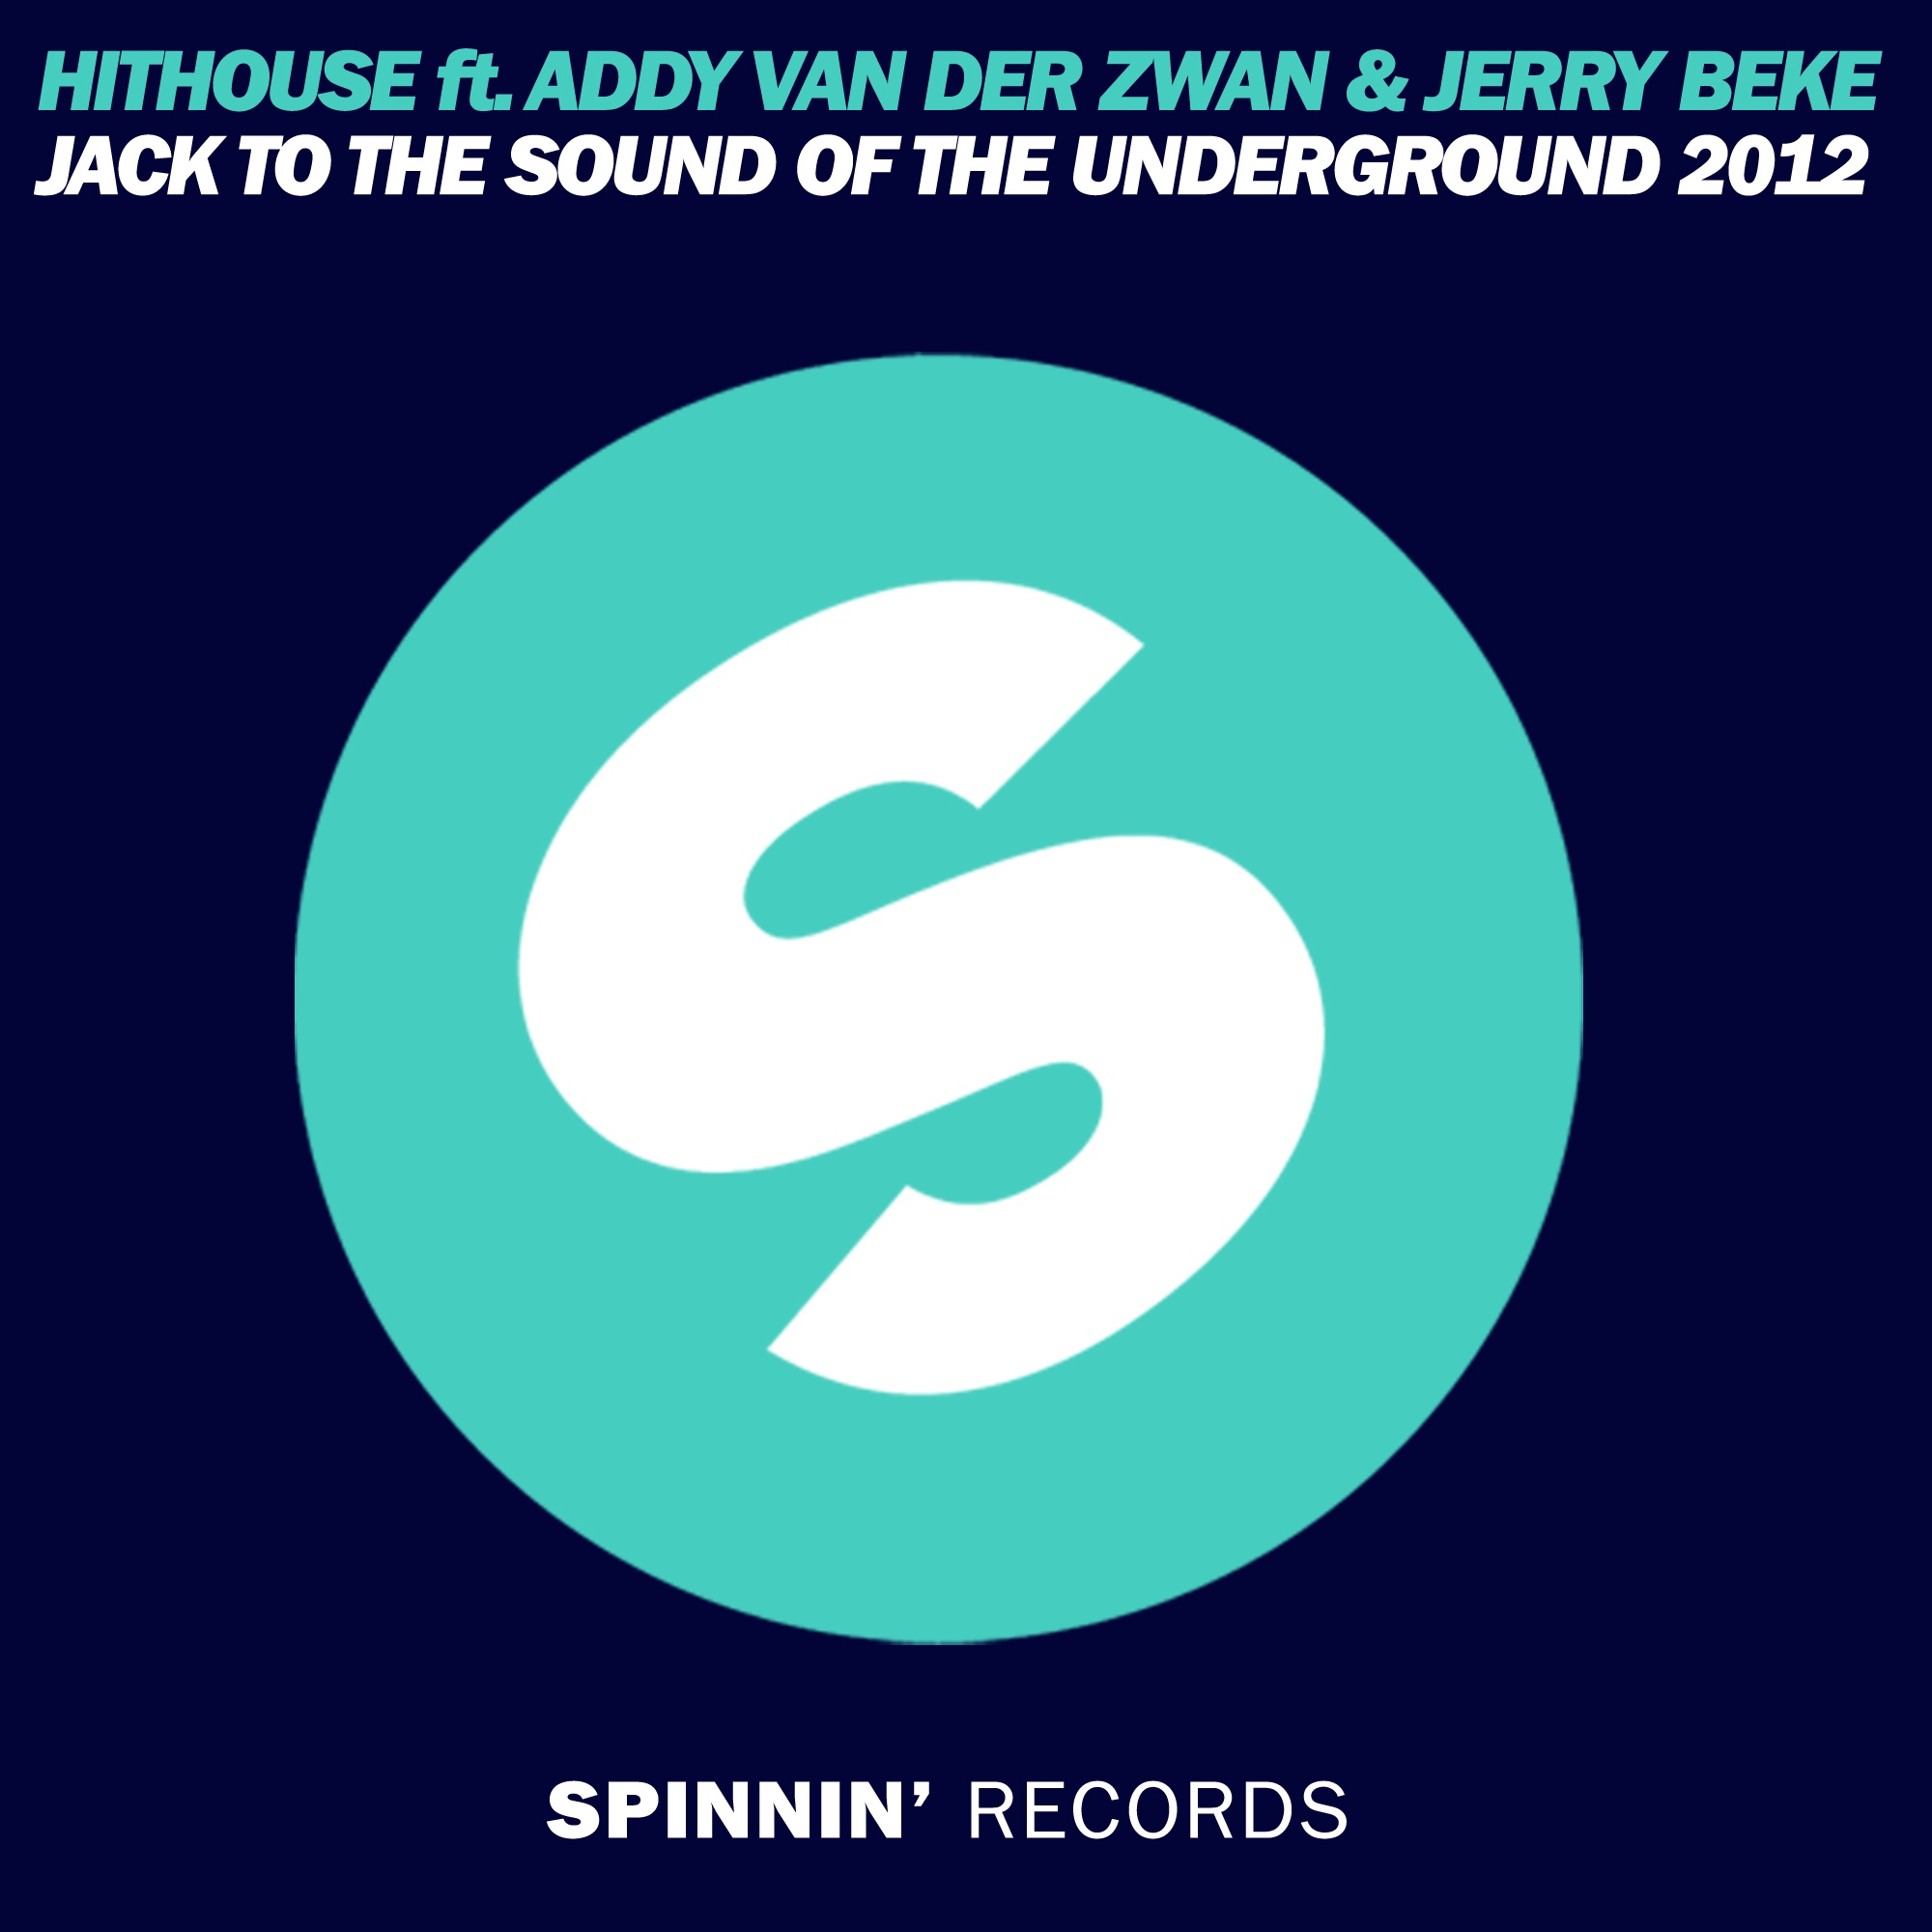 Jack To The Sound Of The Underground 2012 [Addy van der Zwan & Jerry Beke Mix]